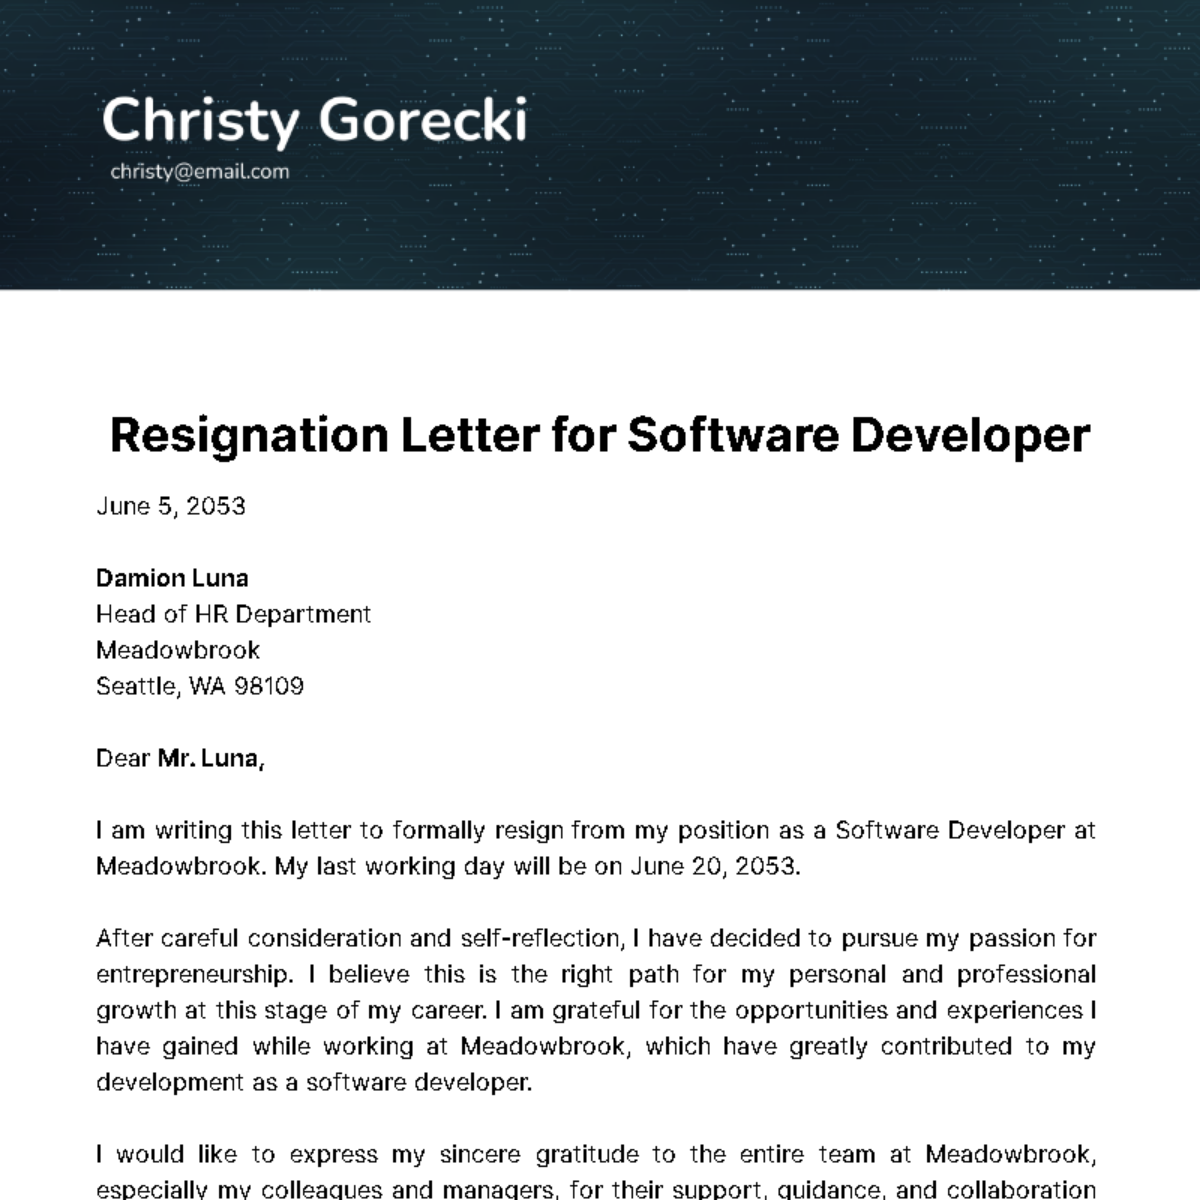 Resignation Letter for Software Developer Template